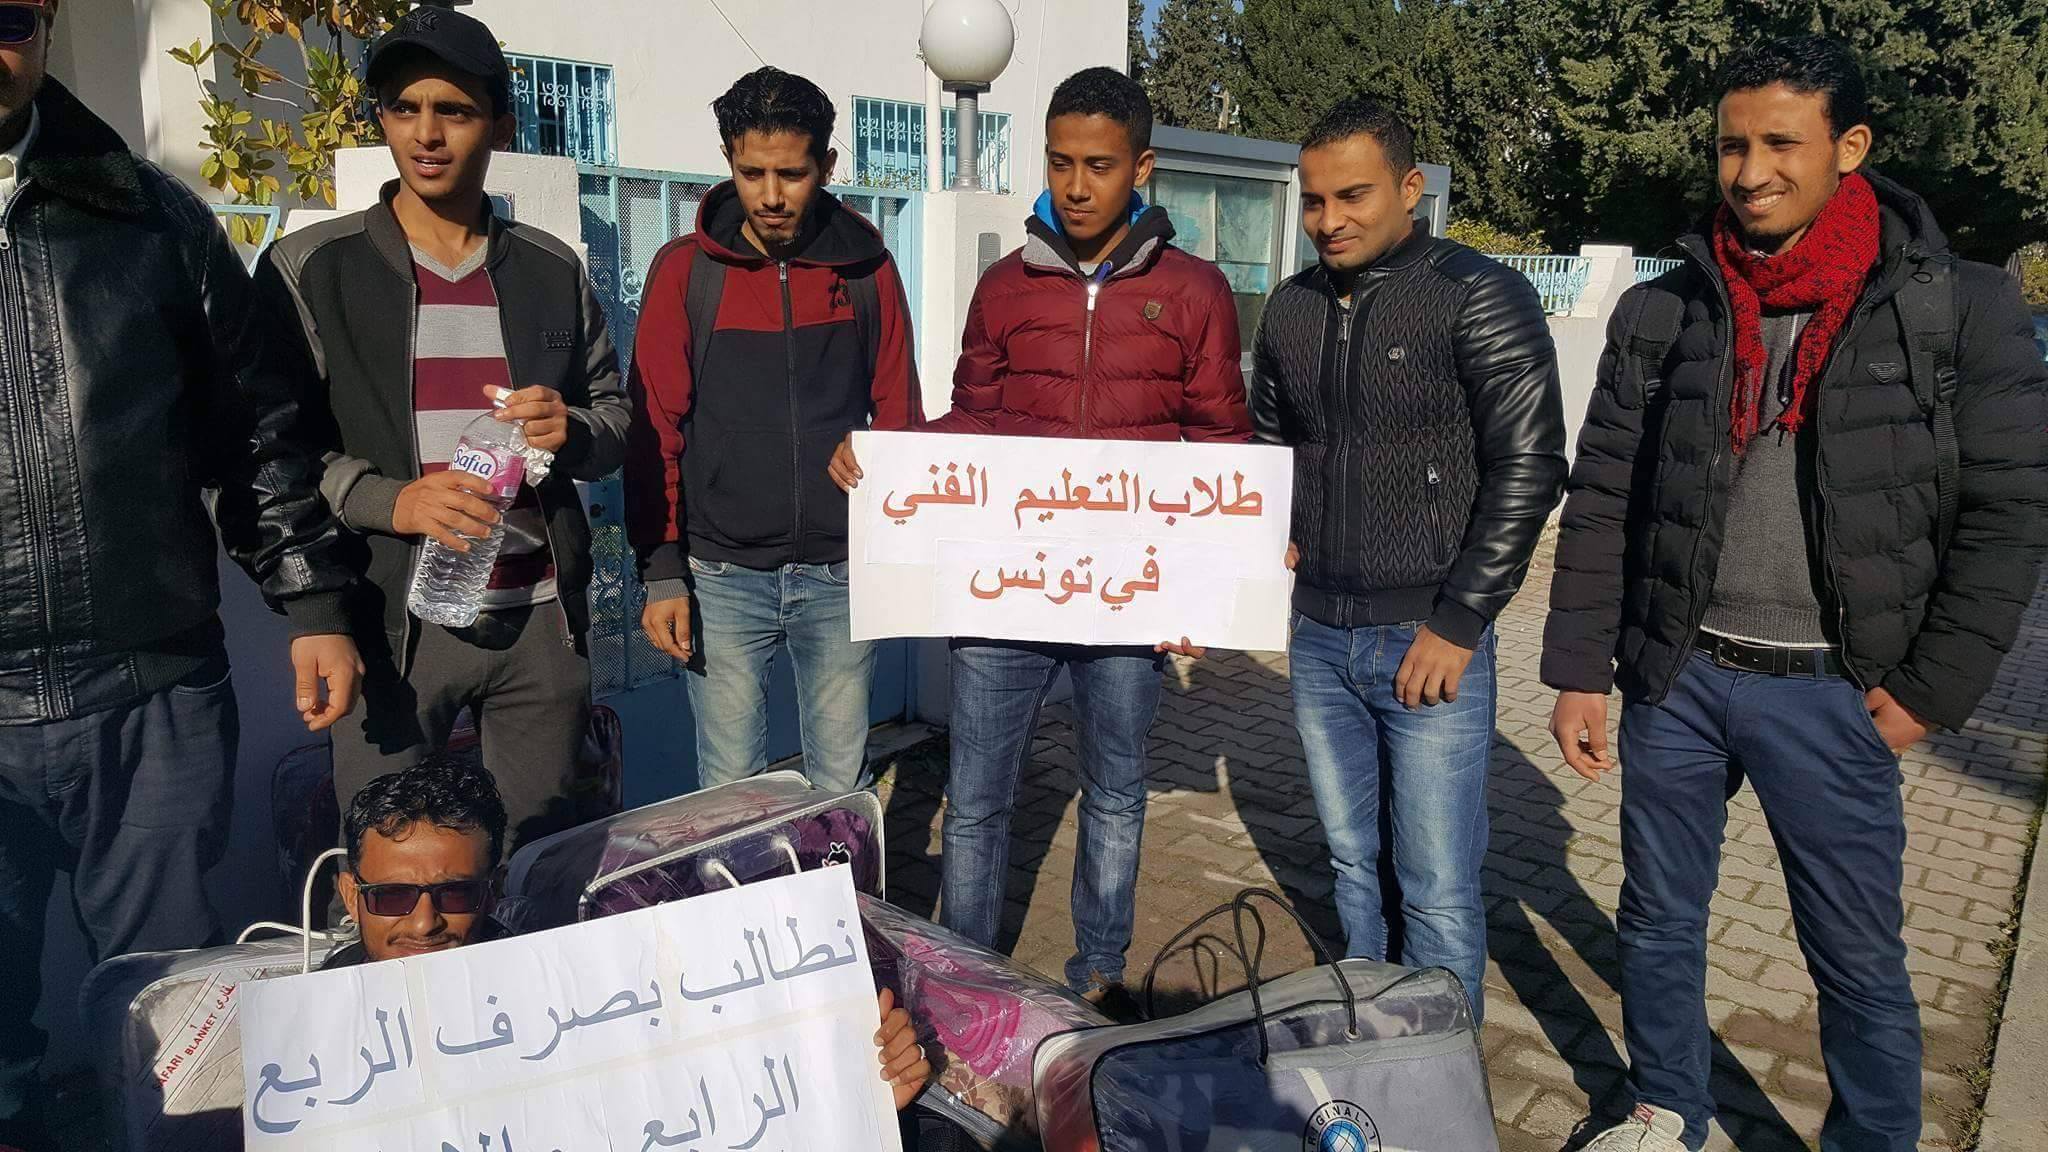 الطلاب اليمنيون المبتعثون في تونس يبدؤون إضرابا مفتوحا للمطالبة بمستحقاتهم